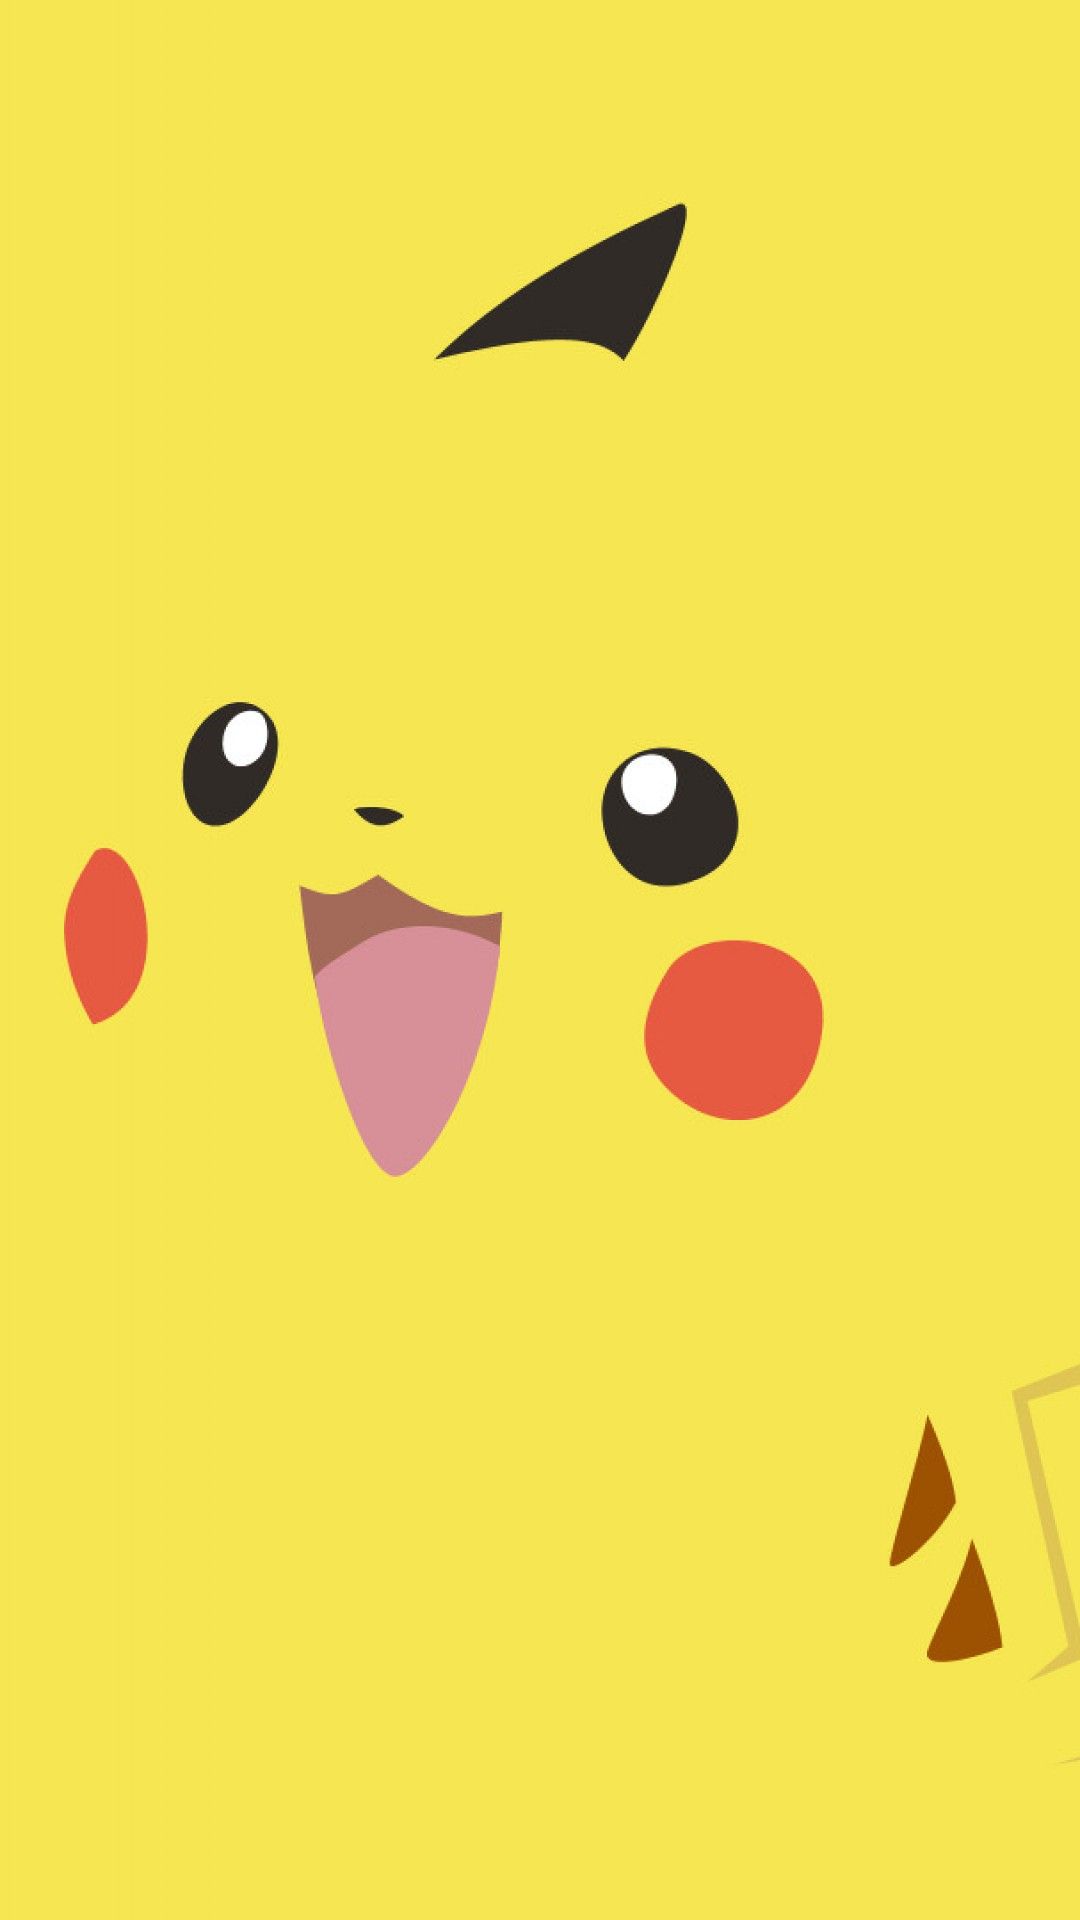 Pikachu [Pokemon]